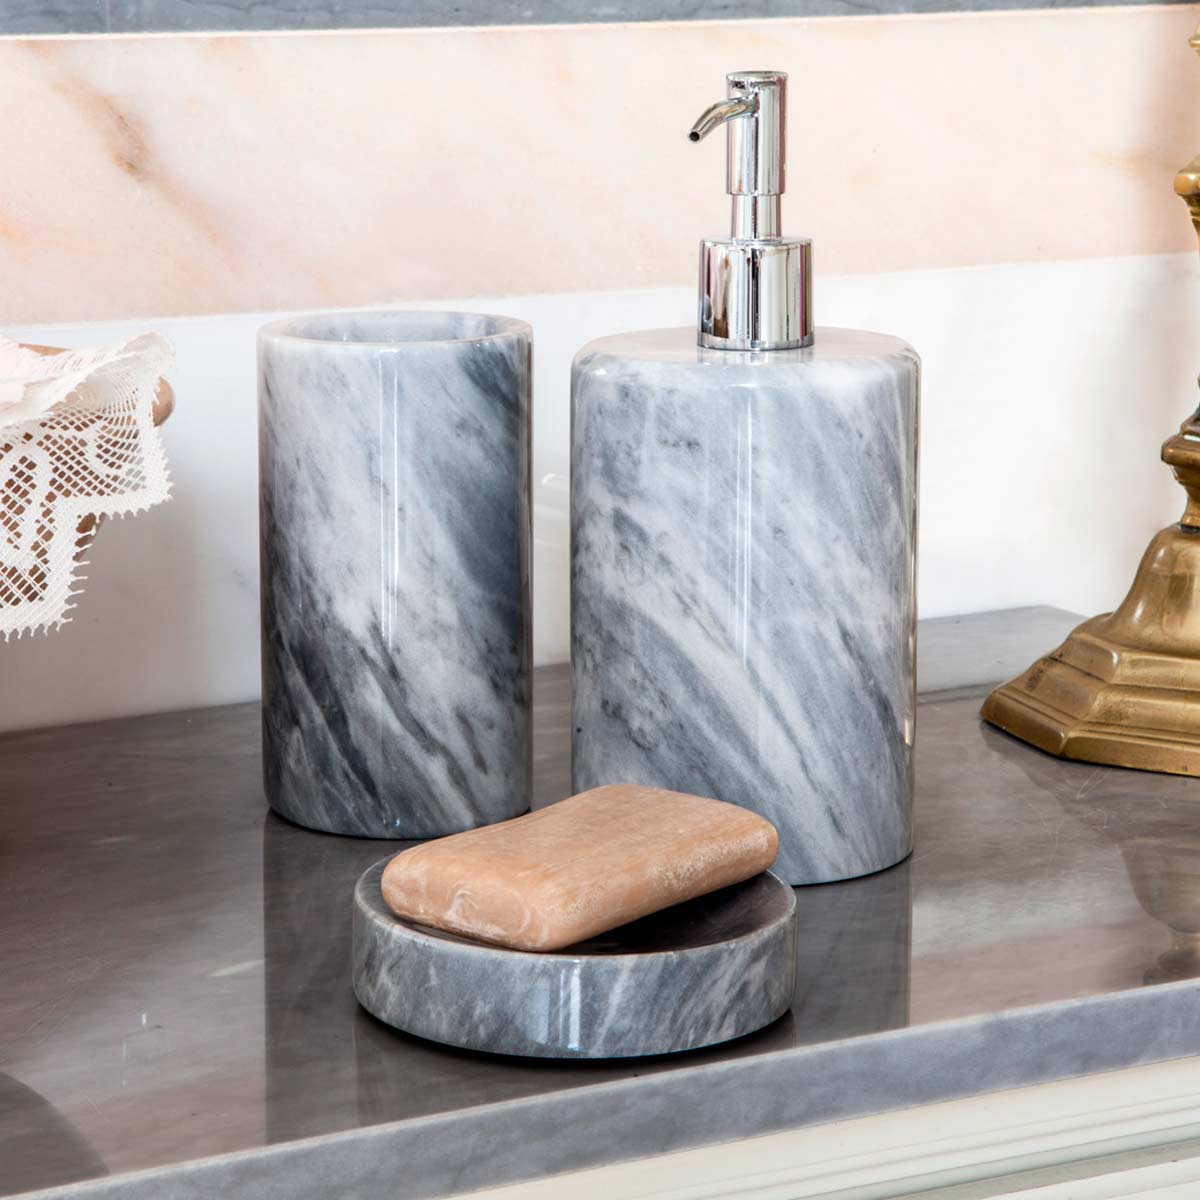 FiammettaV collezione Rounded dispenser sapone in marmo bianco - LivingDecò